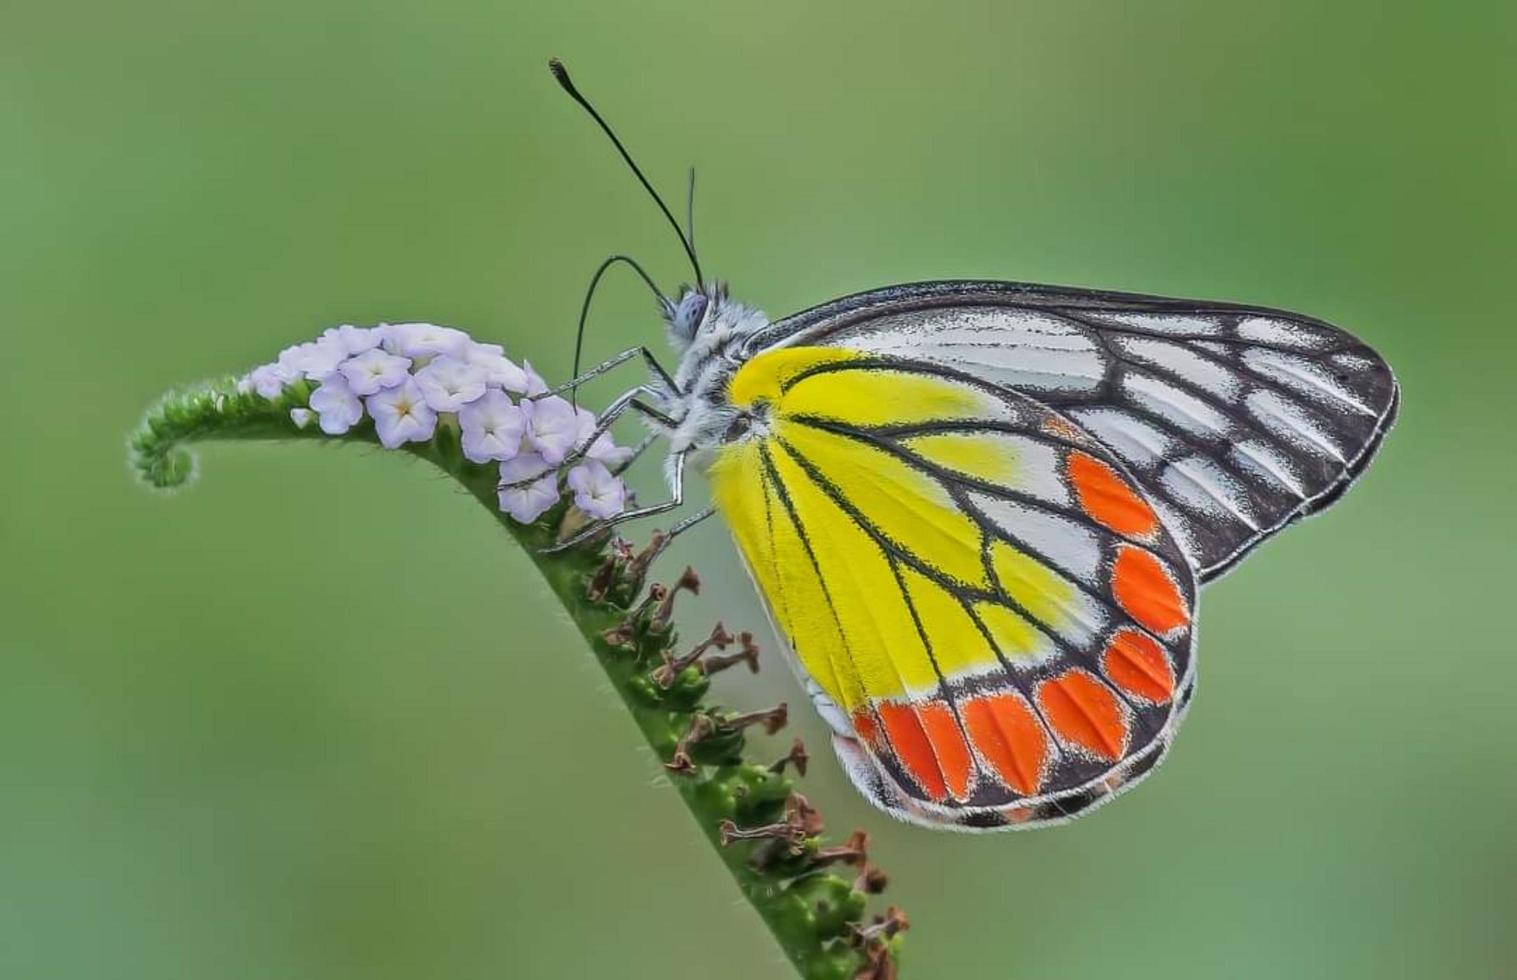 papillon assis sur la fleur. mise au point sélective. photo de haute qualité. nature printanière.